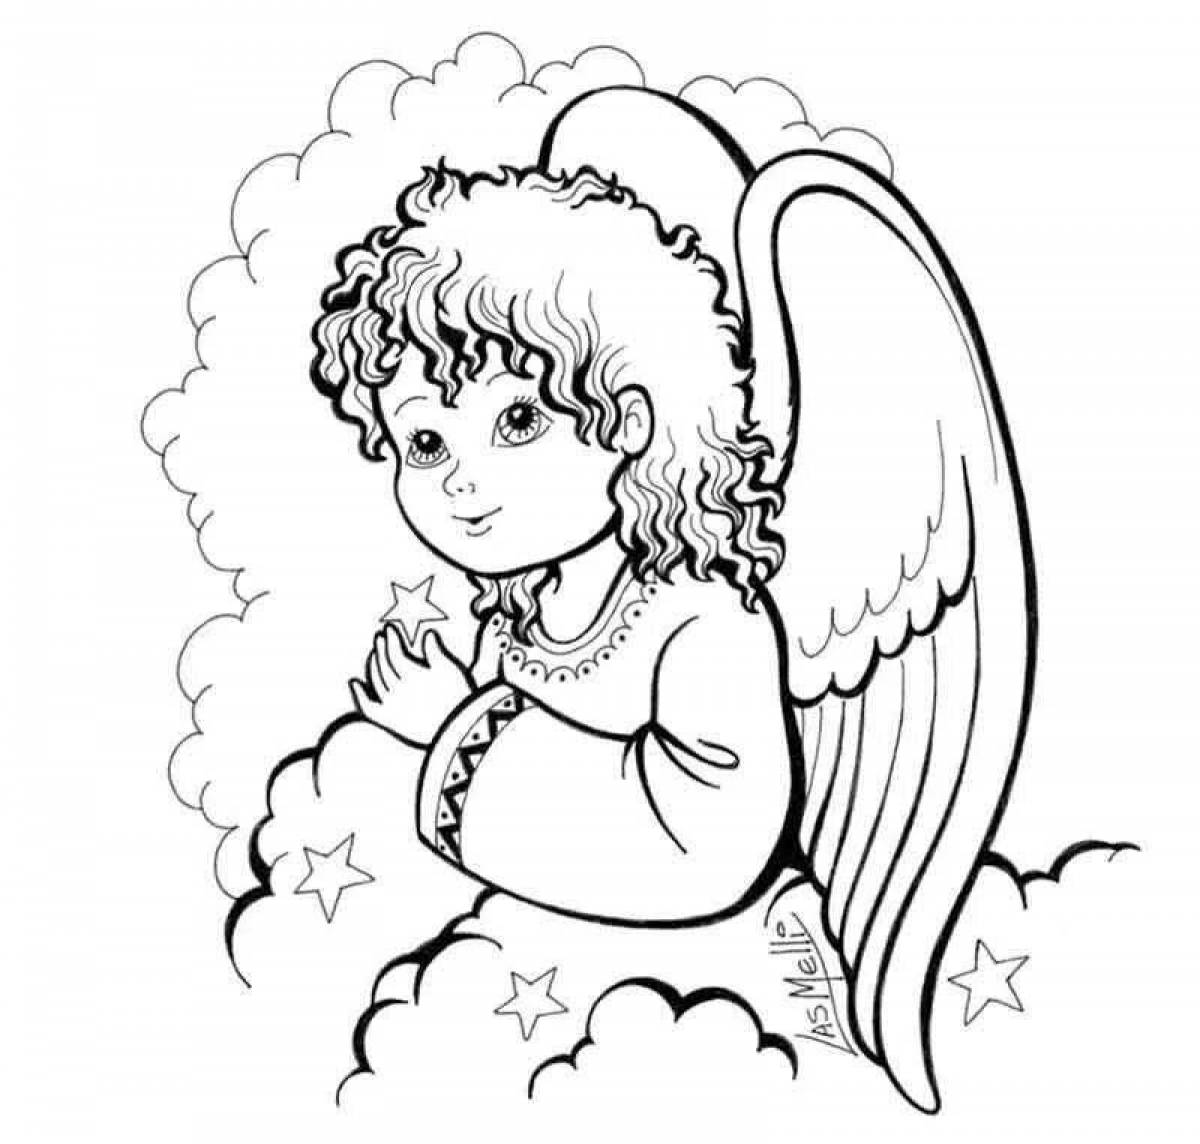 Guardian angel #4